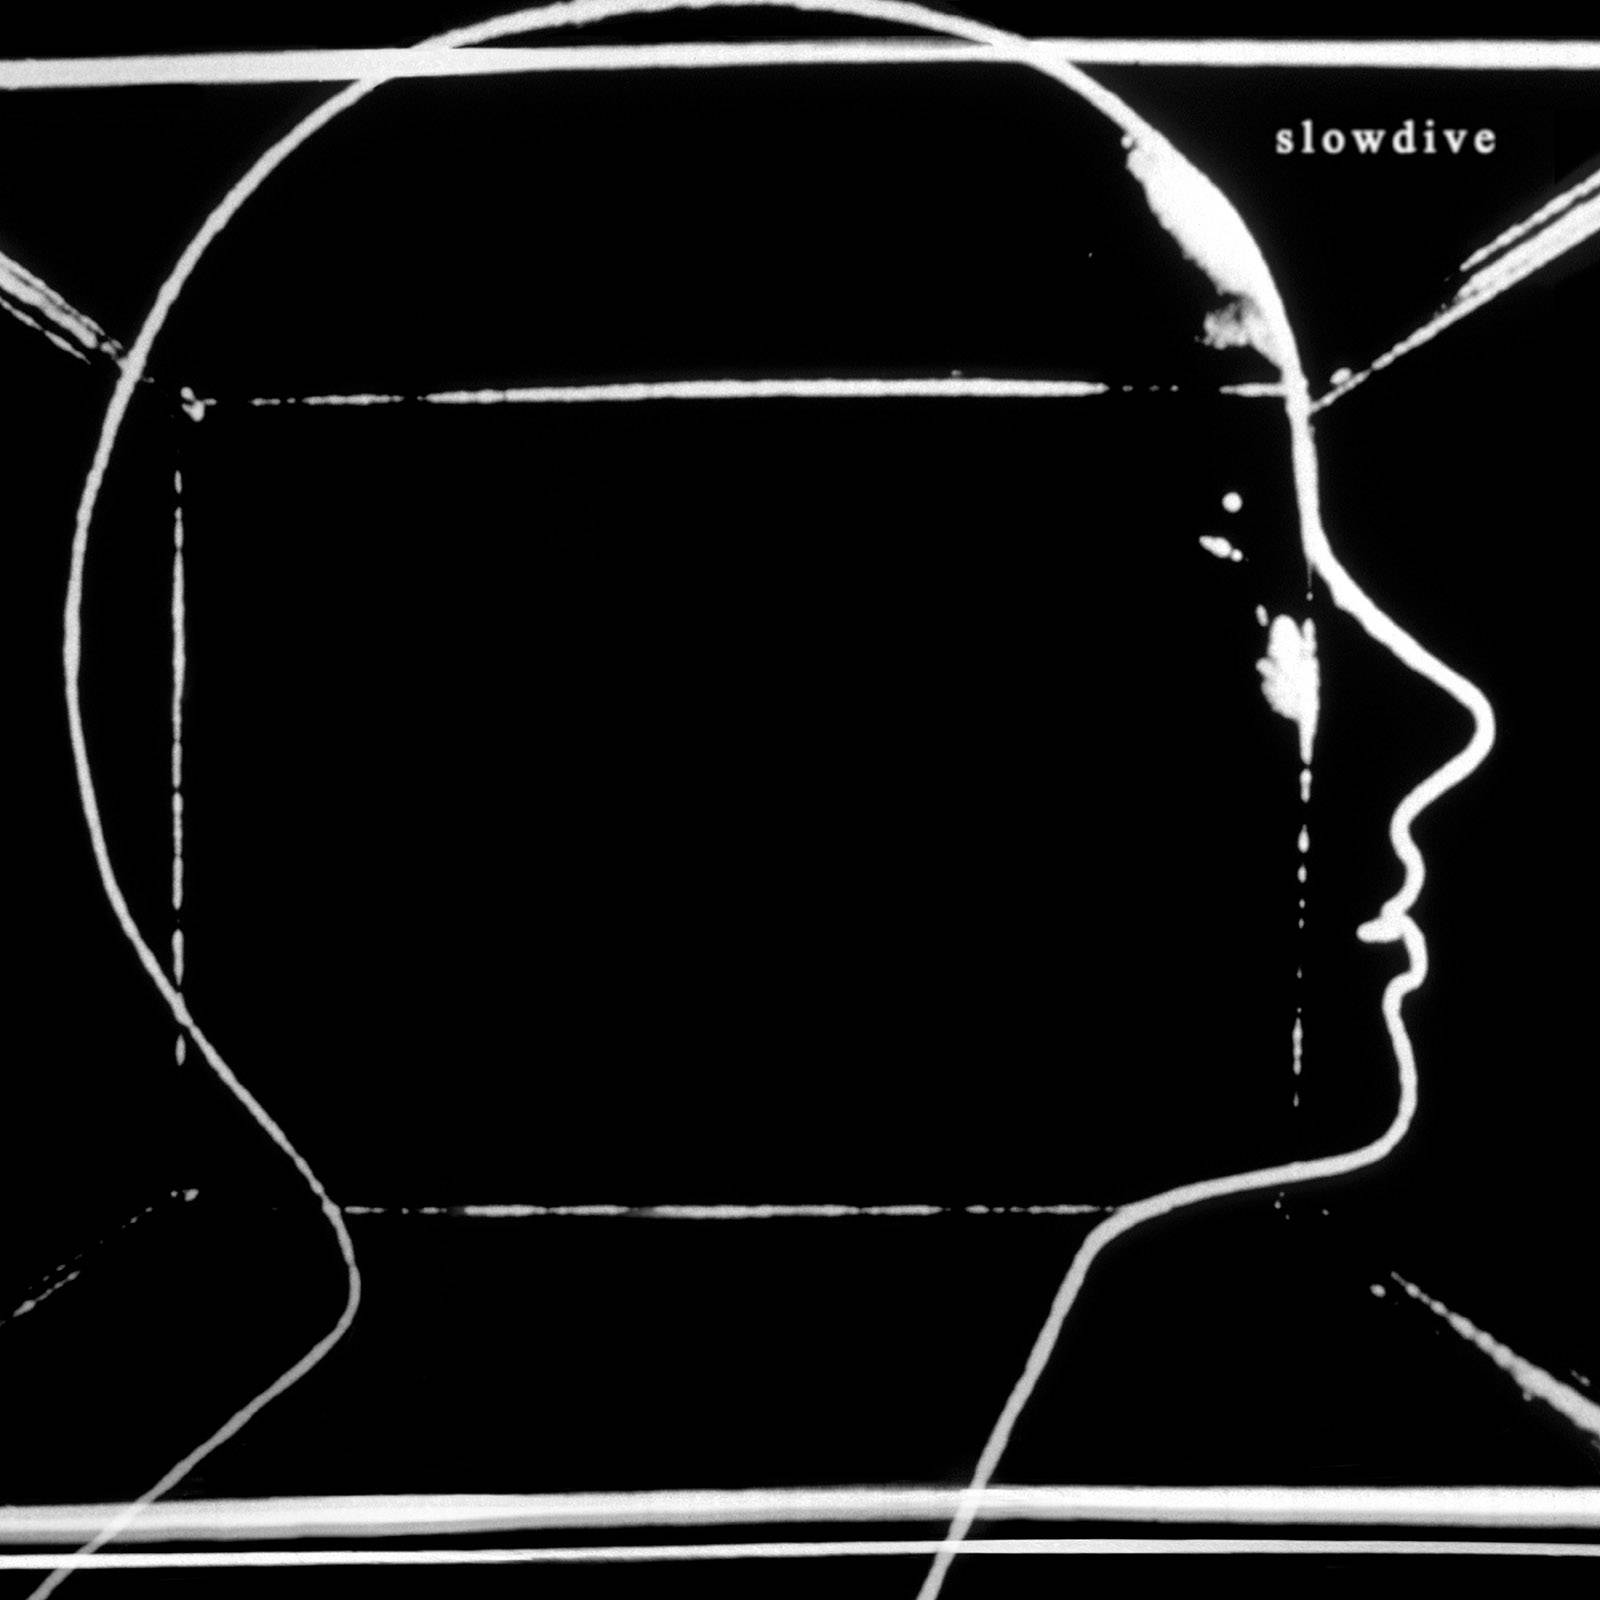 Slowdive - Slowdive (2017) [FLAC 24bit/96kHz]